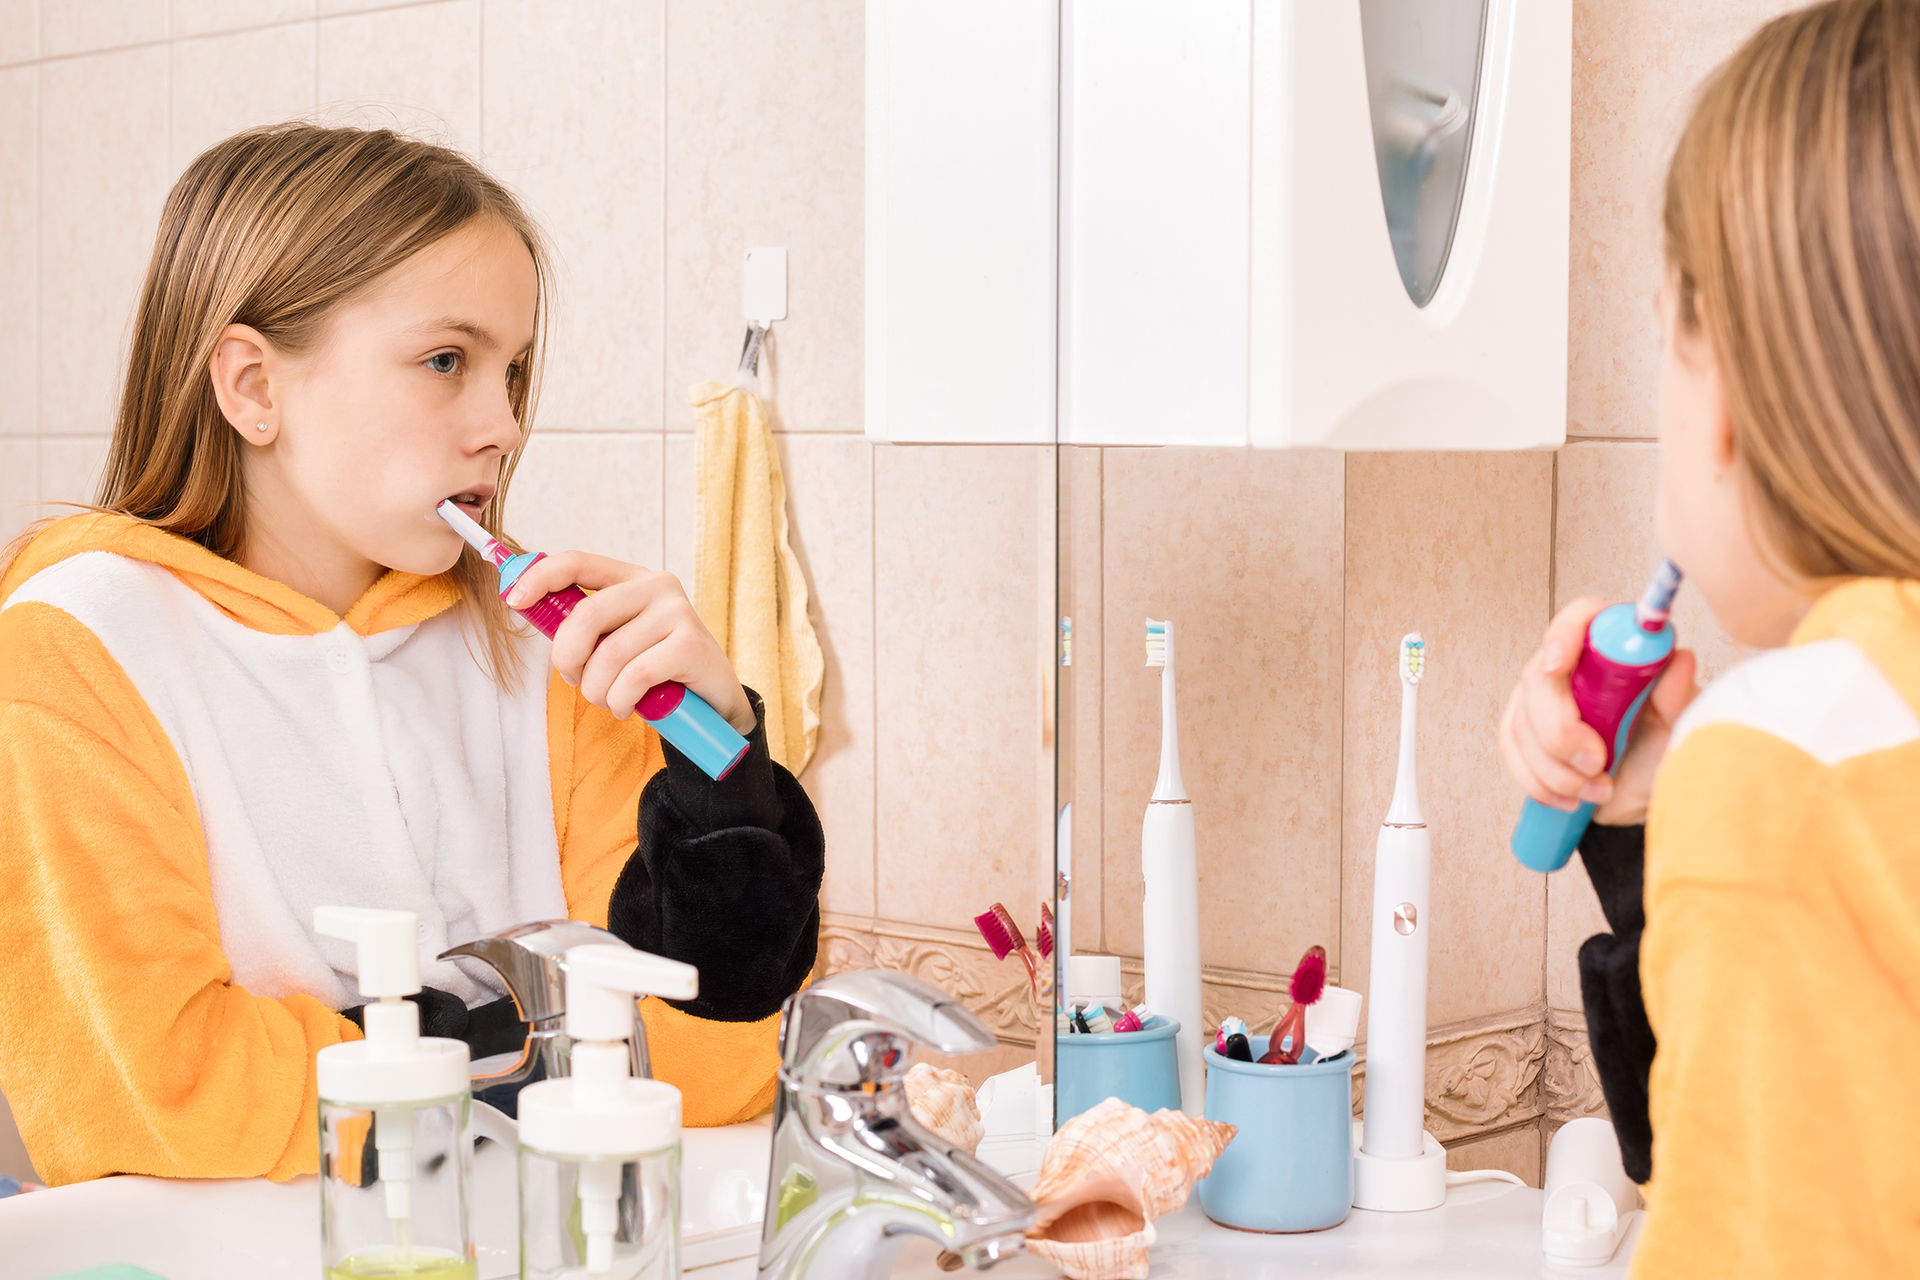 Little girl brushing her teeth